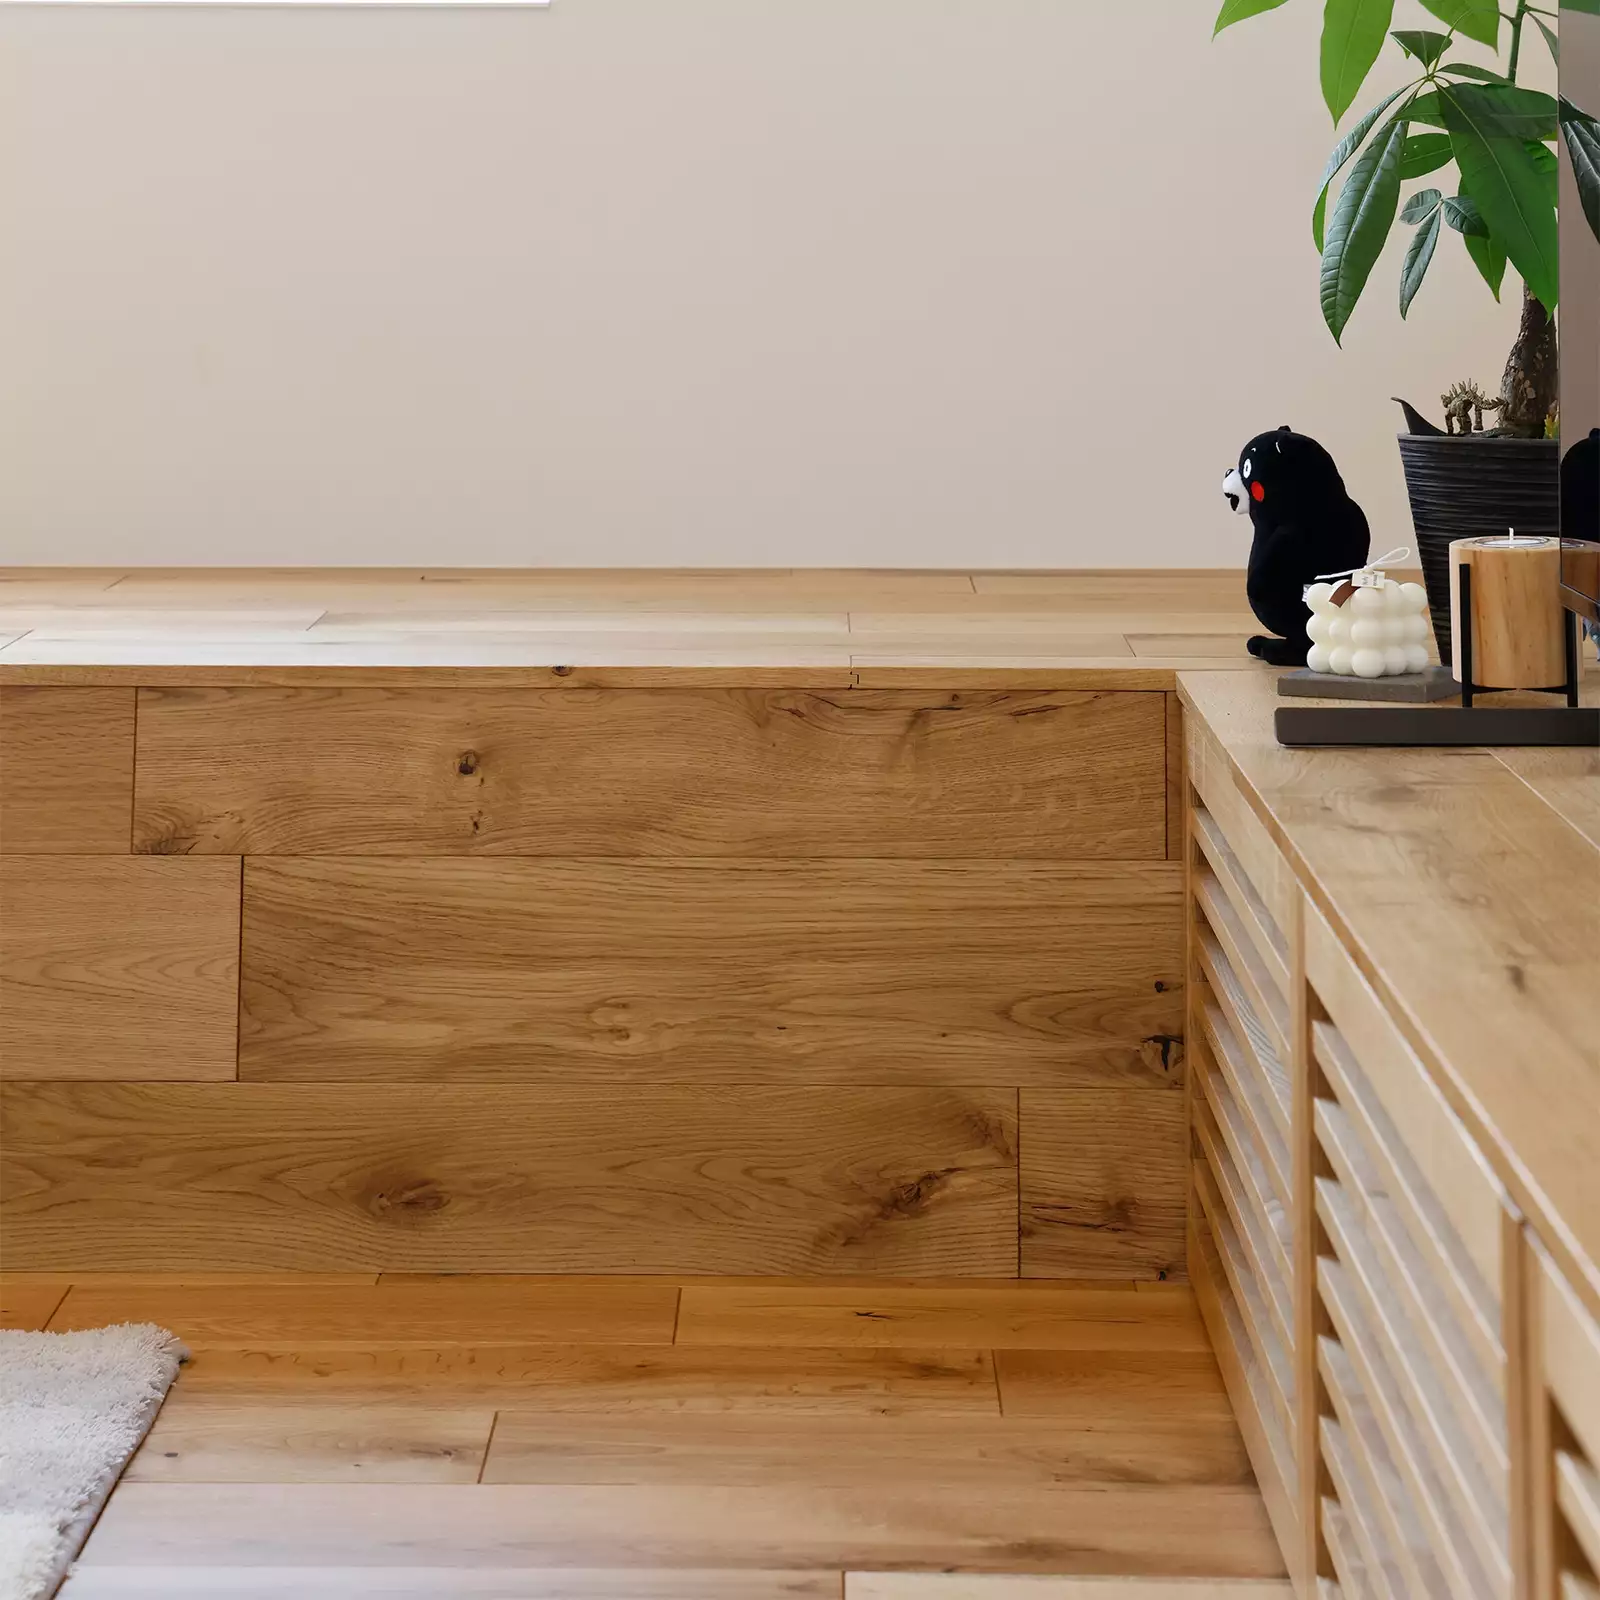 R+houseの物件のLDKにあるベンチの写真。床材と同じ素材を使ったベンチはくつろぎの空間。